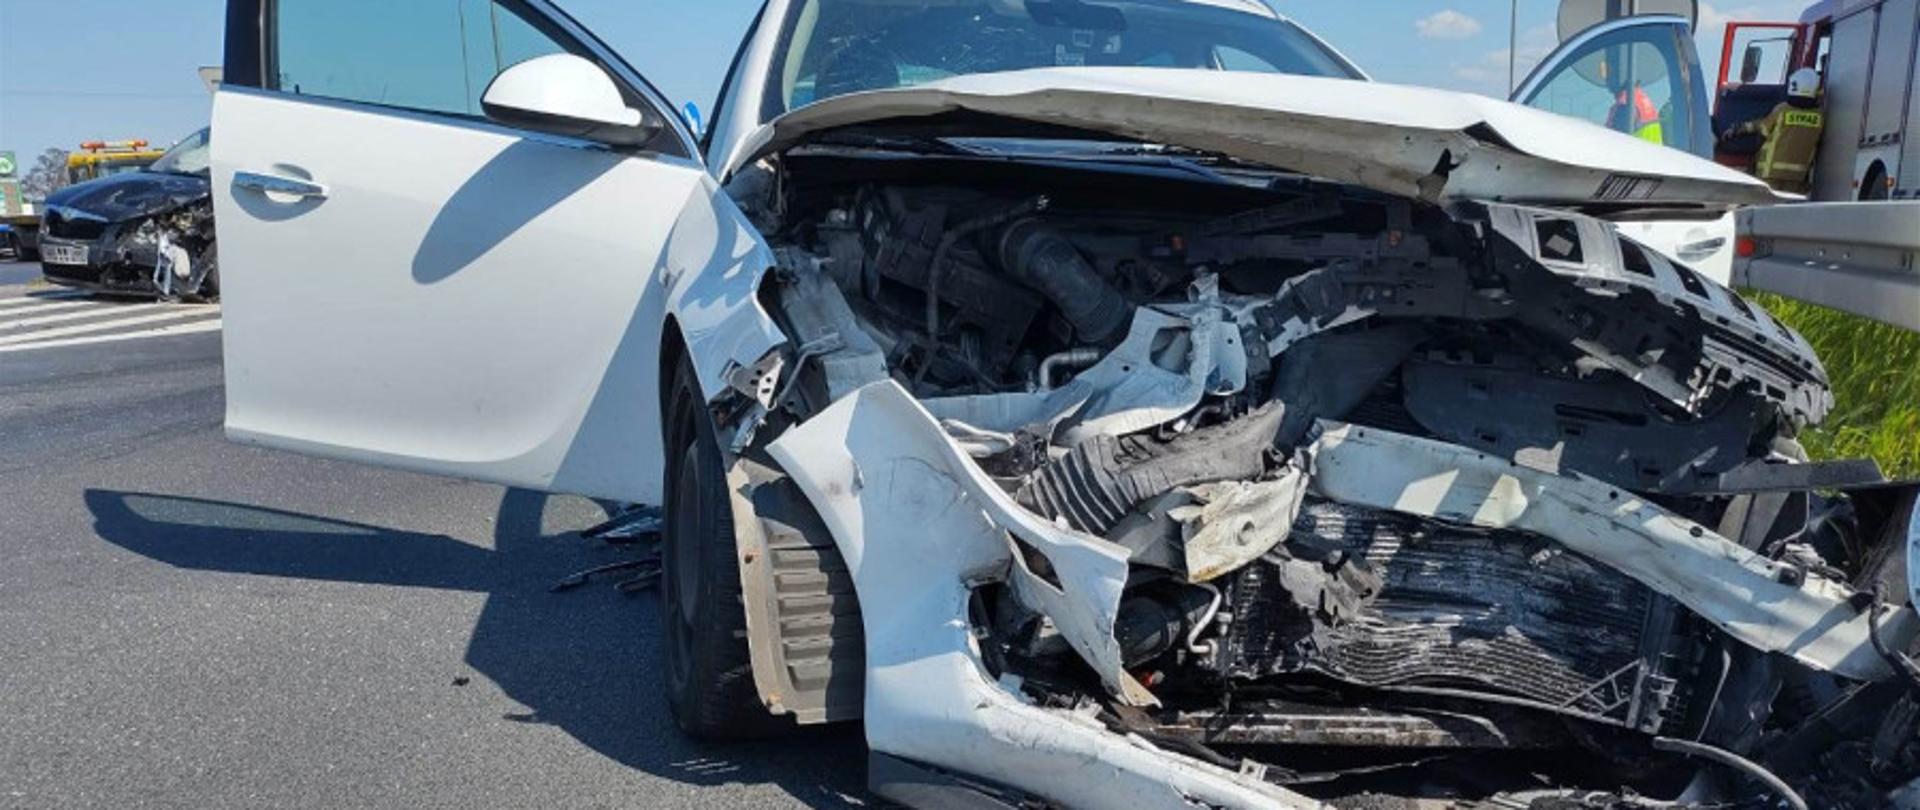 Zdjęcie przedstawia samochód osobowy koloru białego po zderzeniu. Zniszczony przód pojazdu